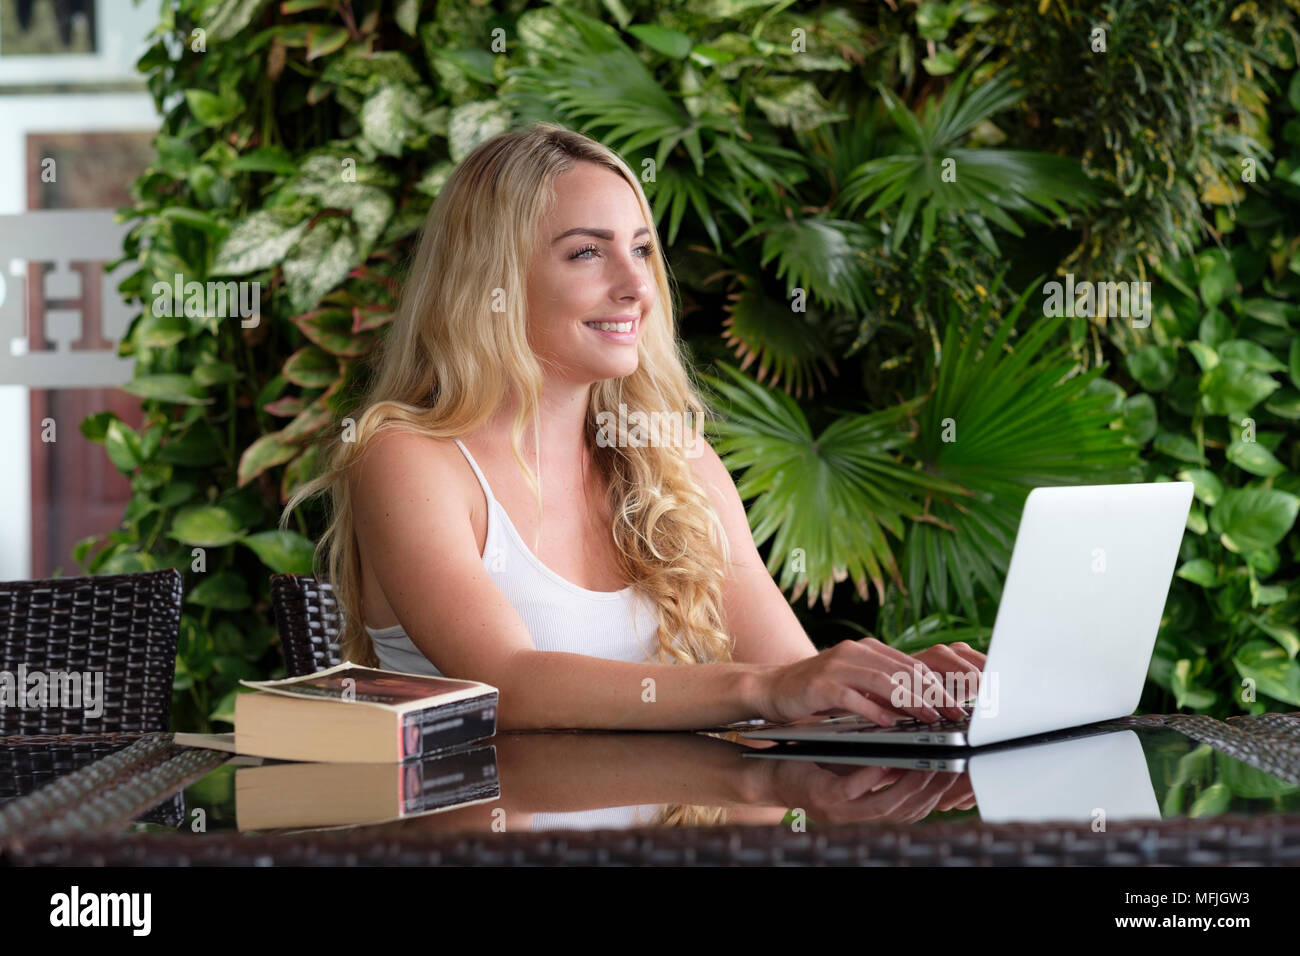 Young Caucasian woman backpacker portant un gilet blanc haut et assis à une table en Asie travailler sur un ordinateur portable, le Vietnam, l'Indochine, l'Asie du Sud-Est, Asie Banque D'Images